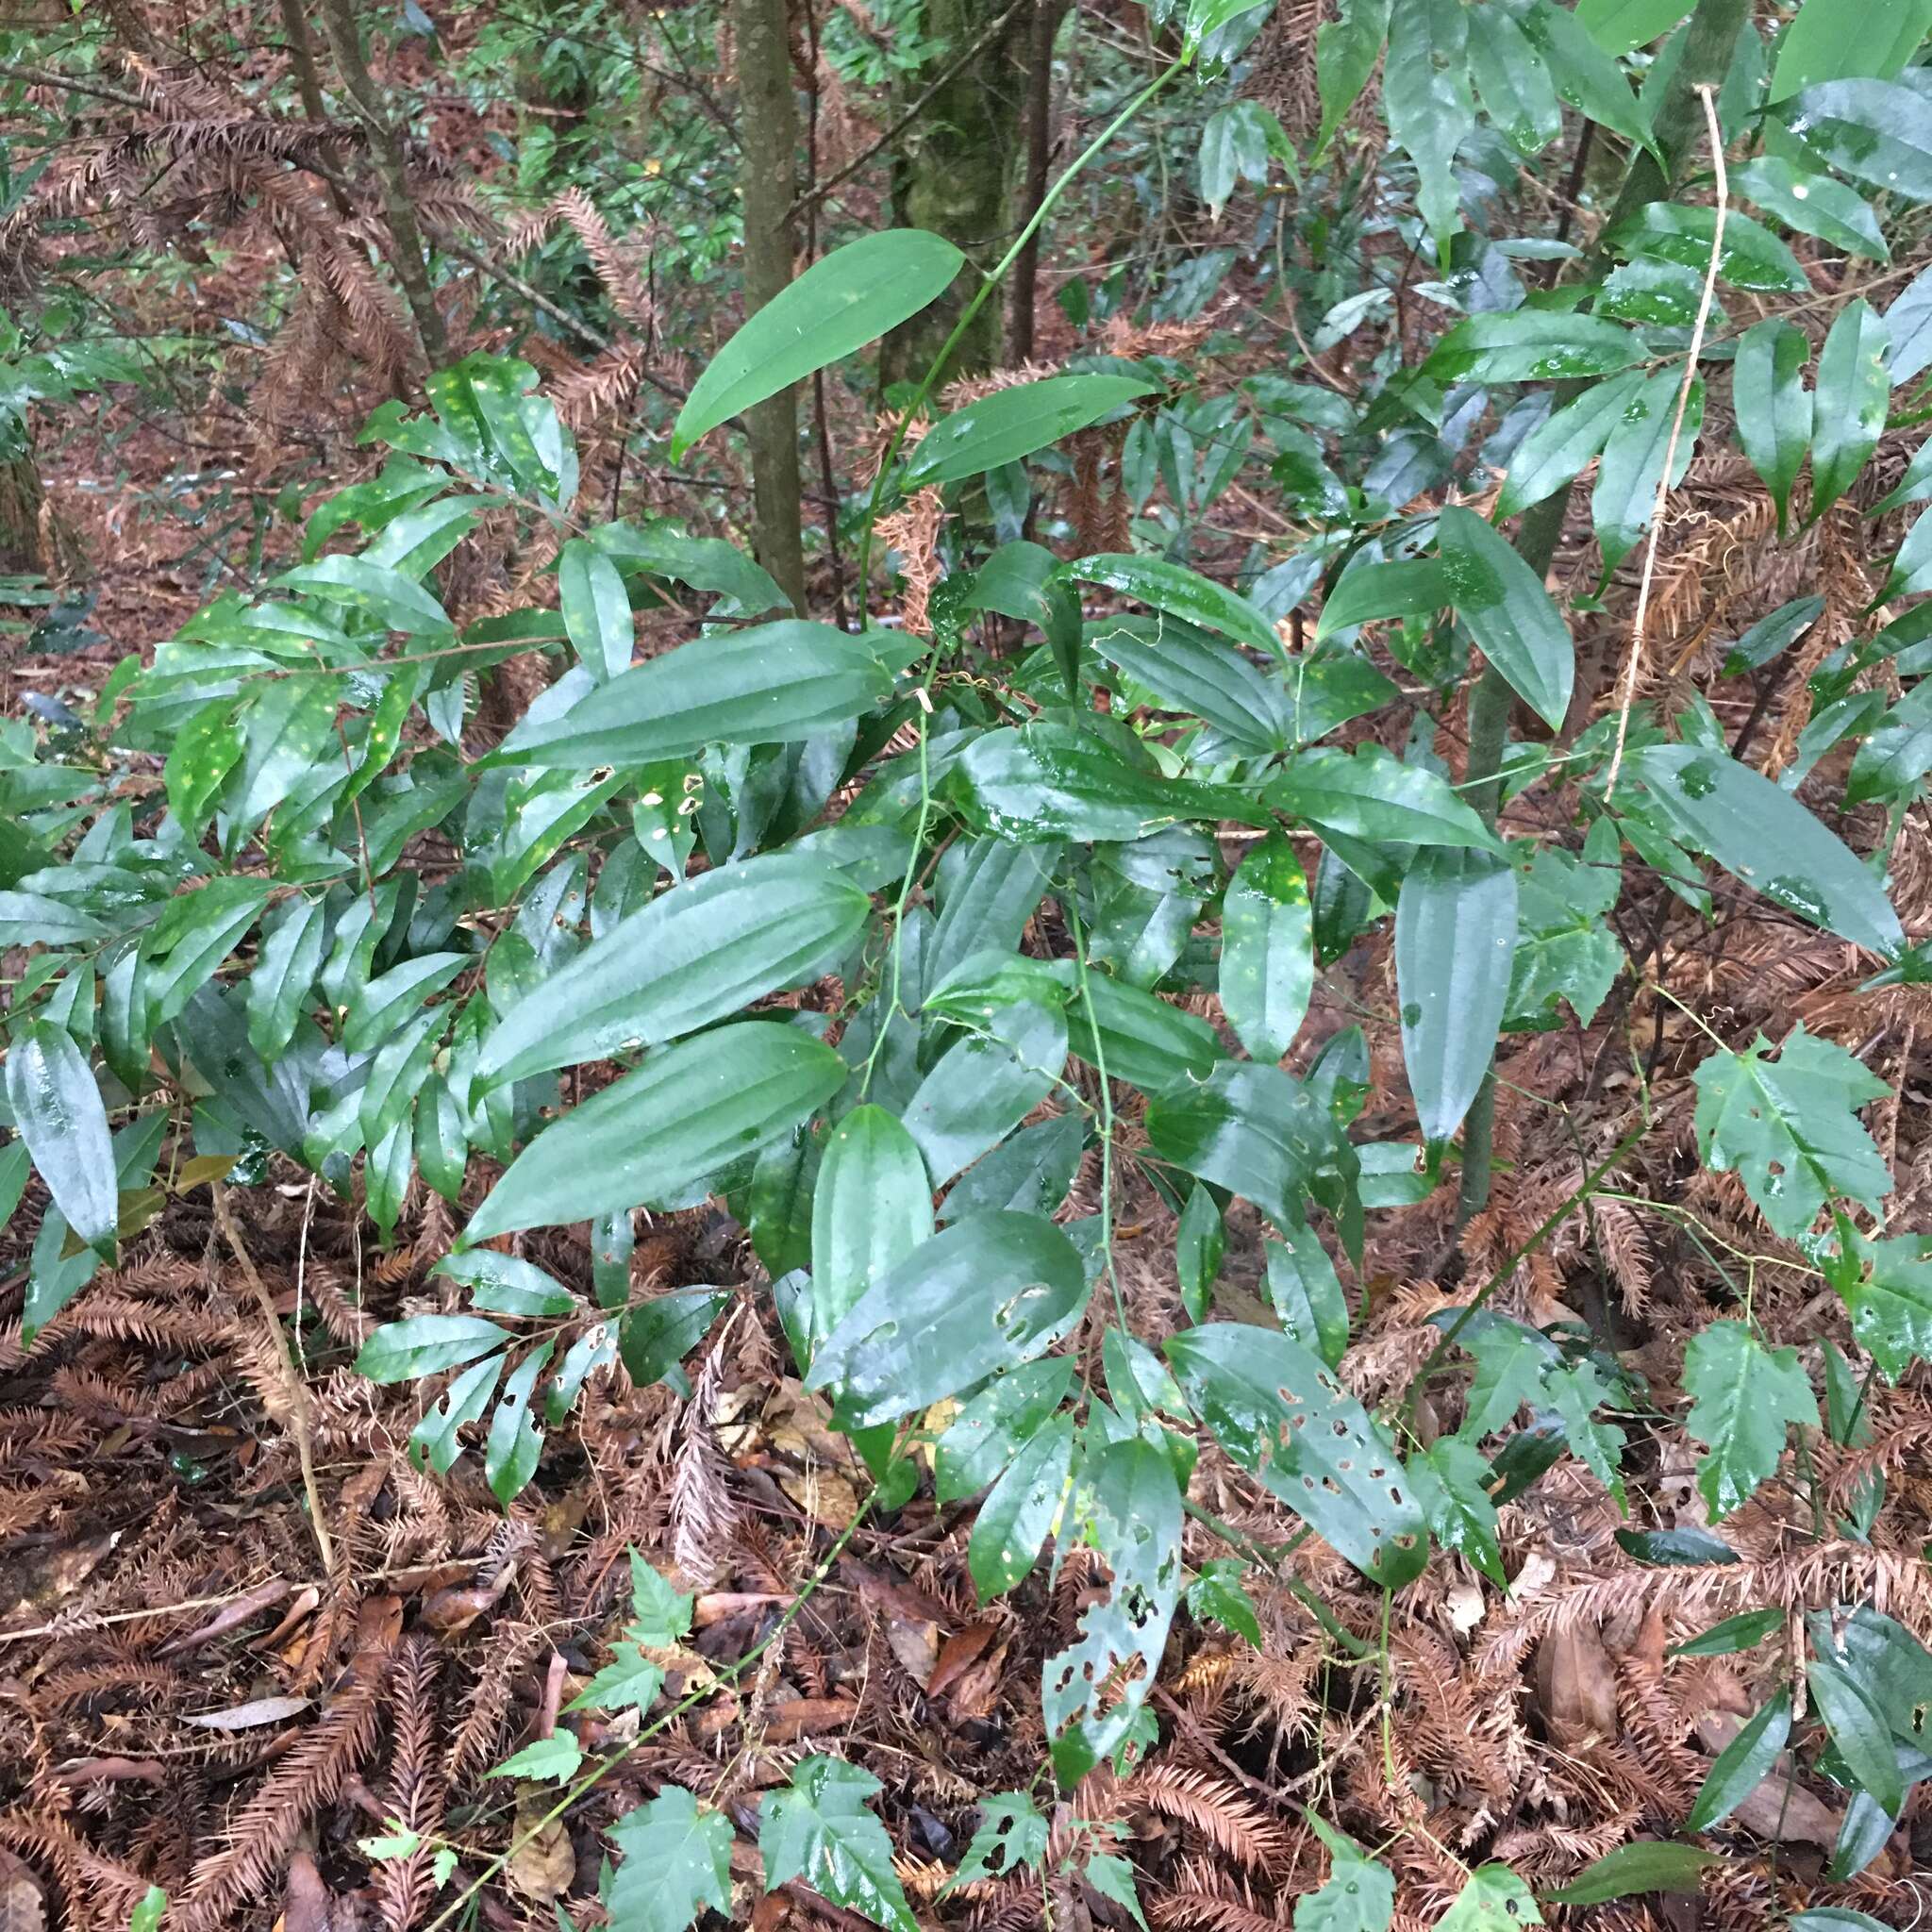 Image of Smilax lanceifolia Roxb.